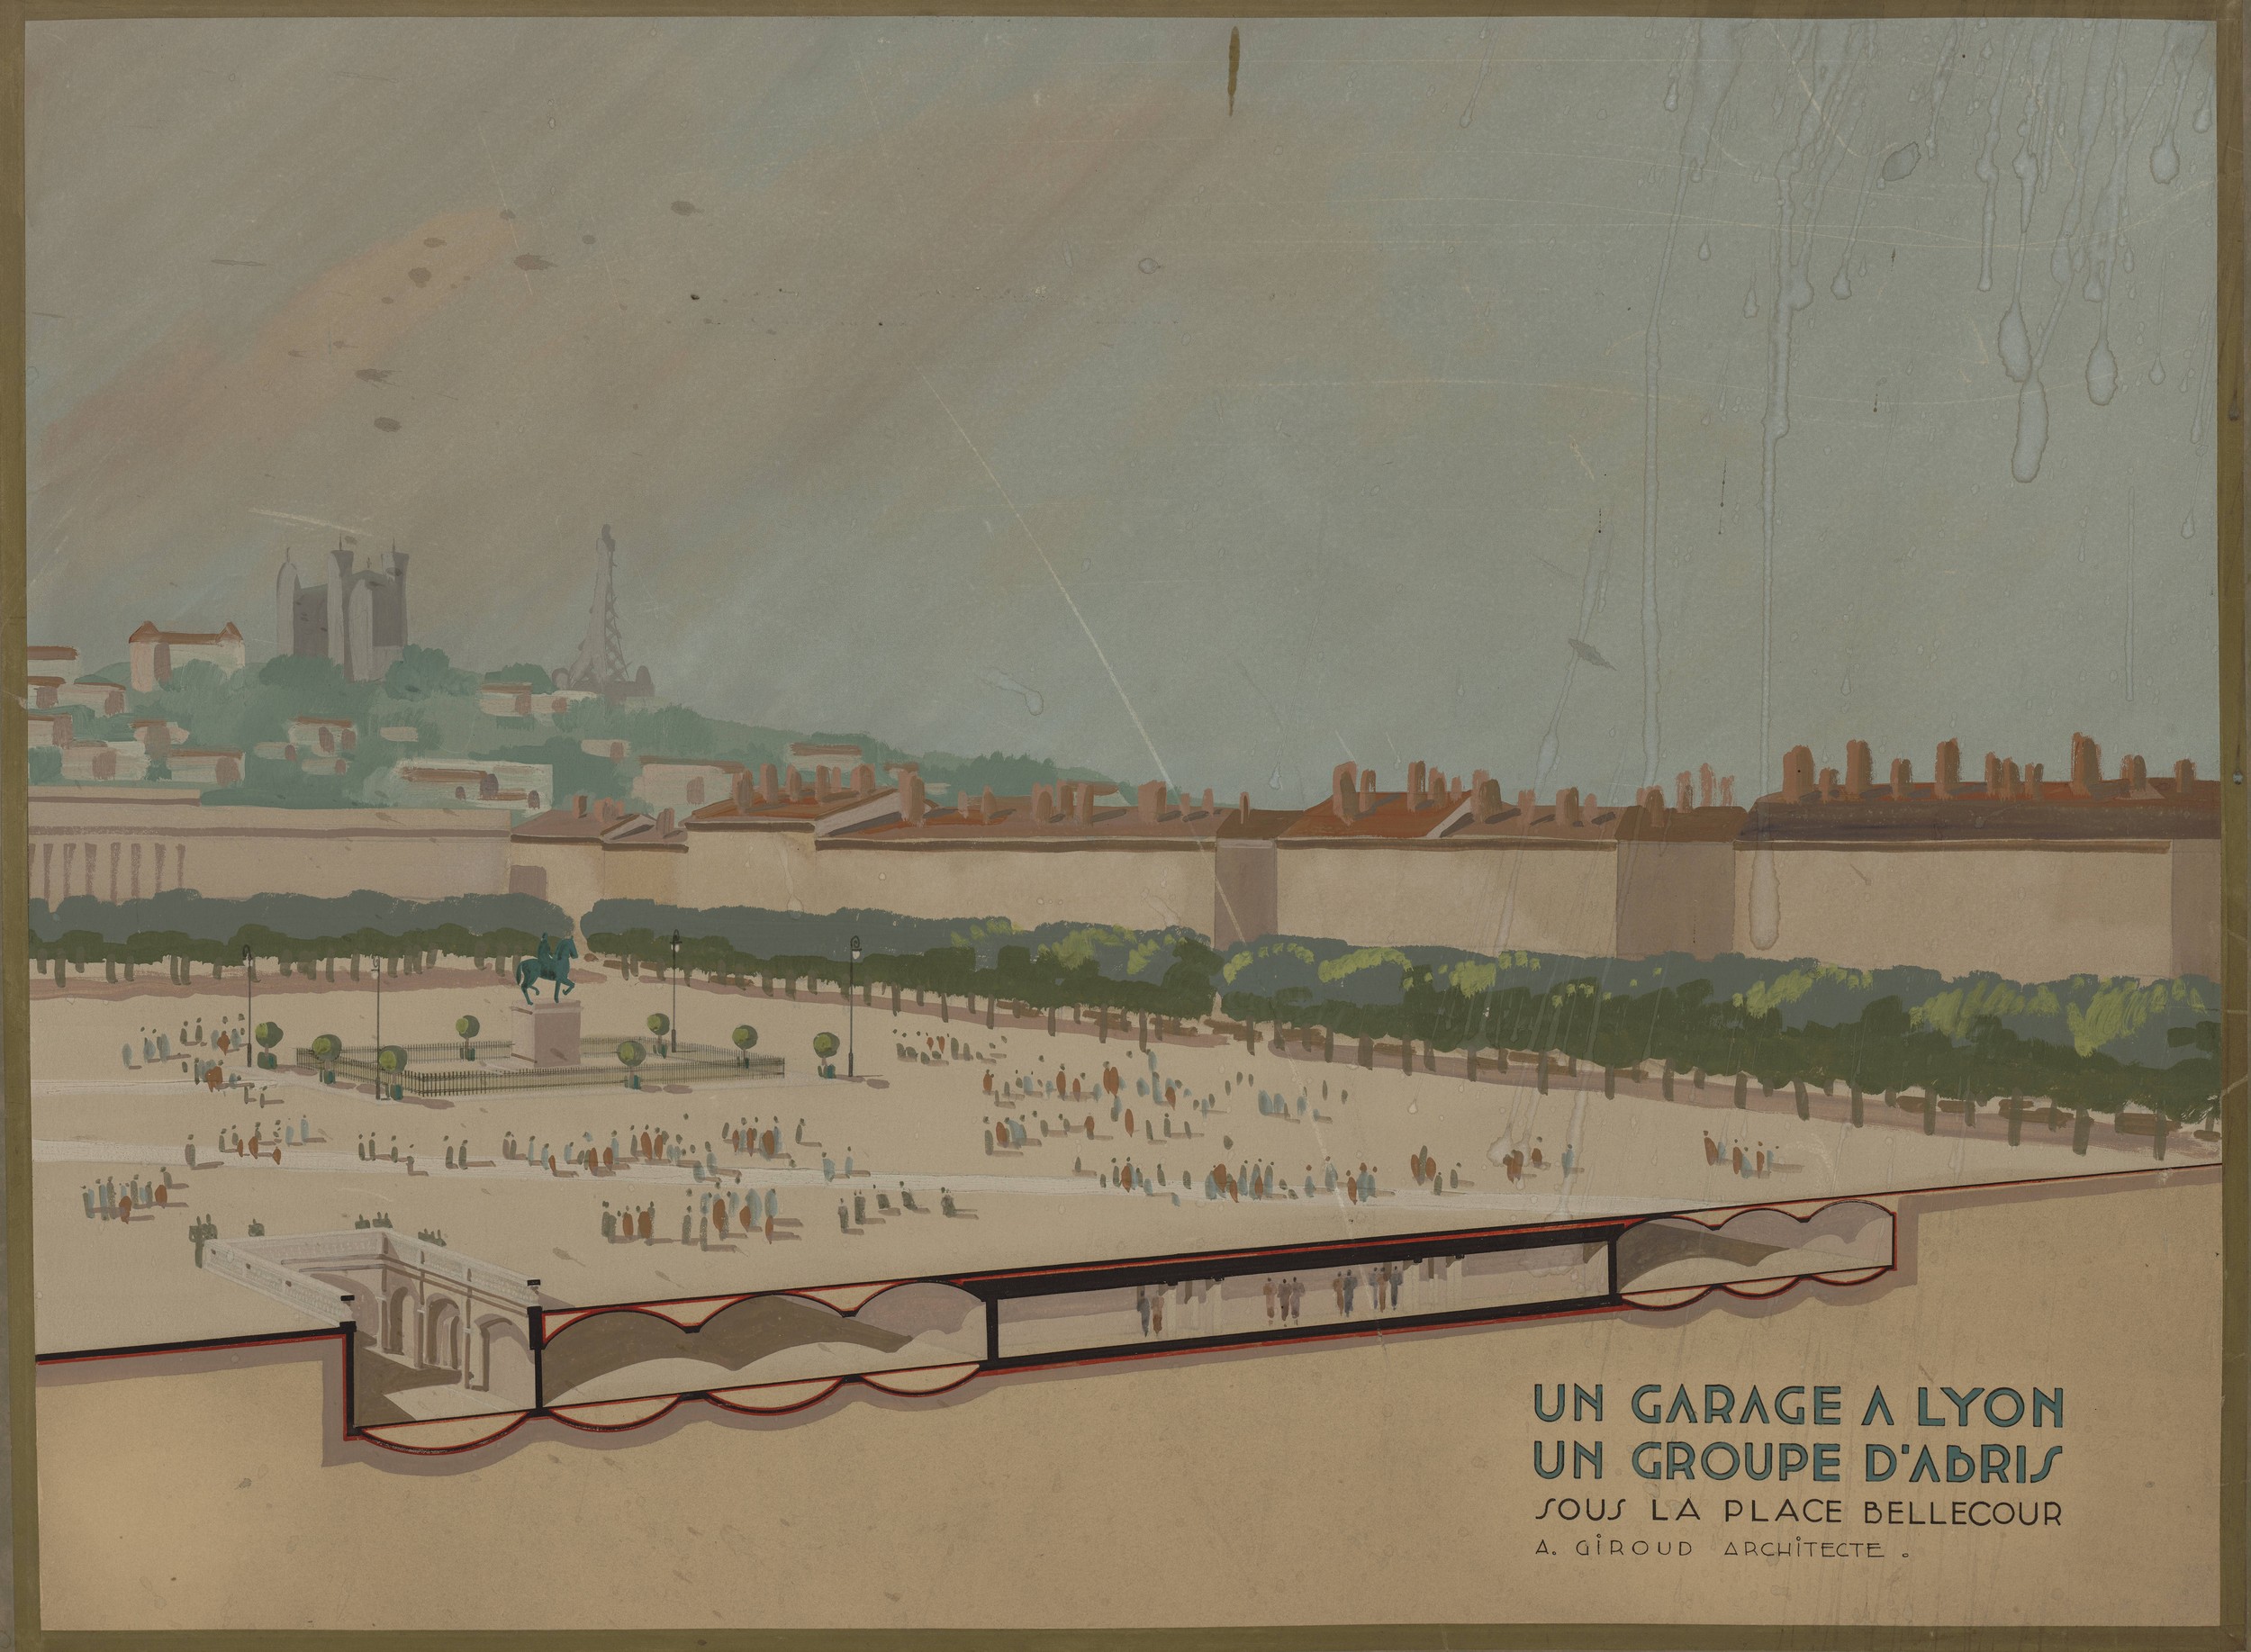 Projet de garage et de groupe d'abris sous la place Bellecour : dessin en couleur en perspective par A. Giroud (début XXe s., cote : 2S/910)